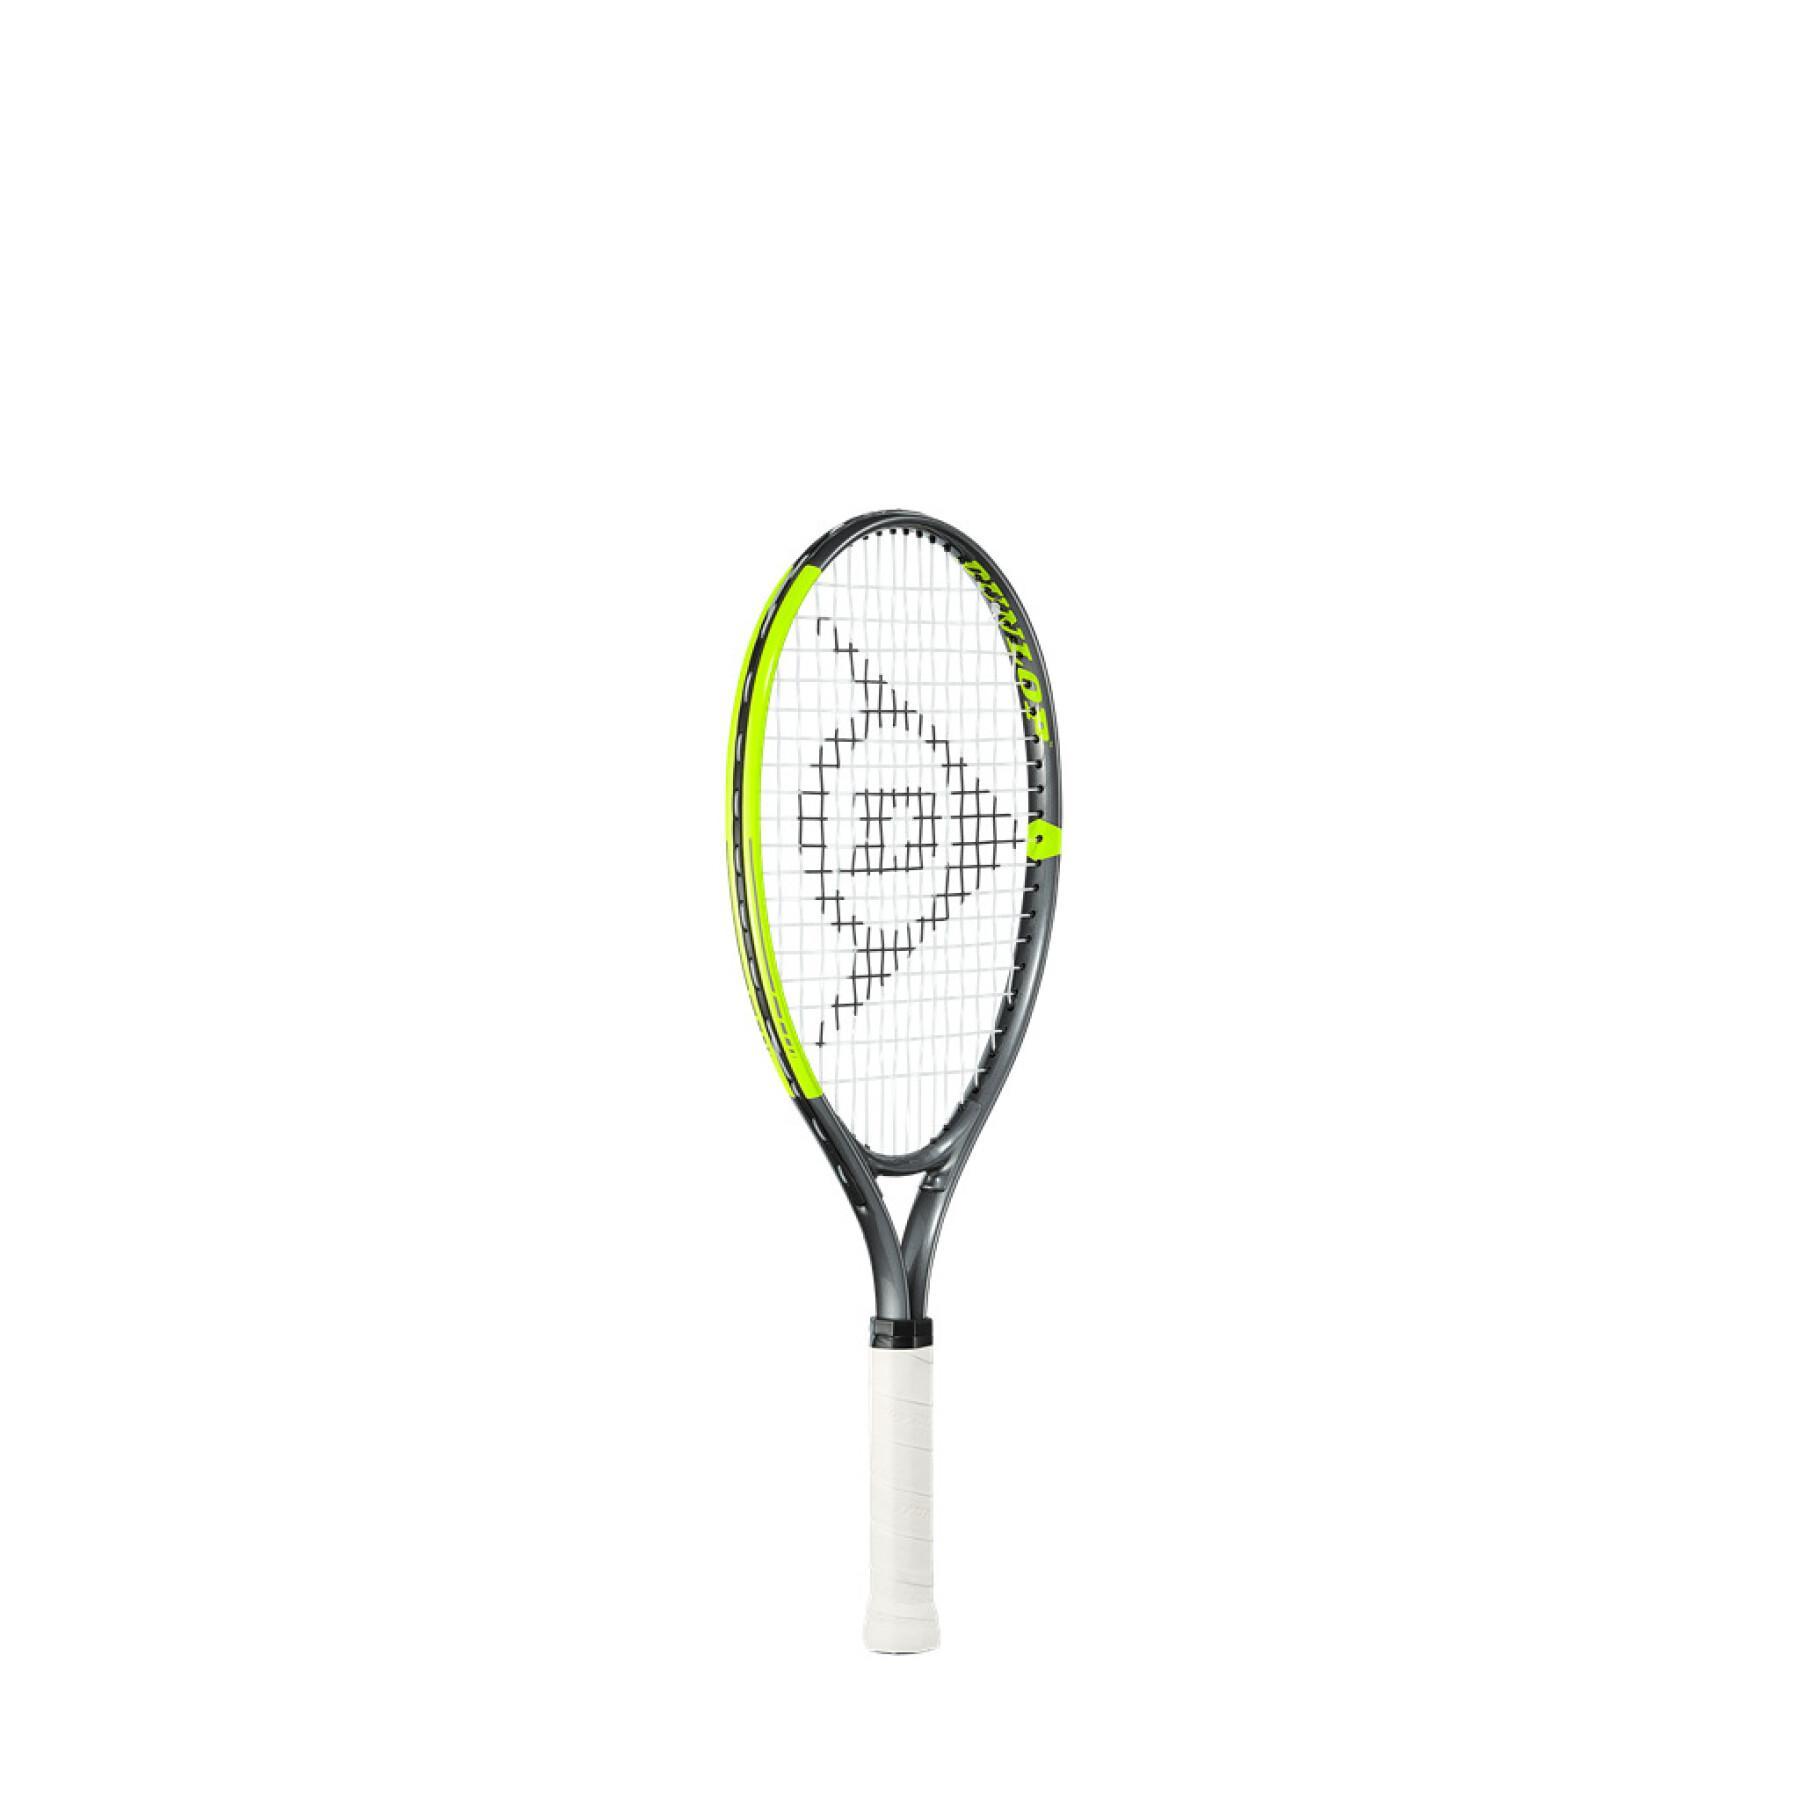 Barnens racket Dunlop sx 21 g000